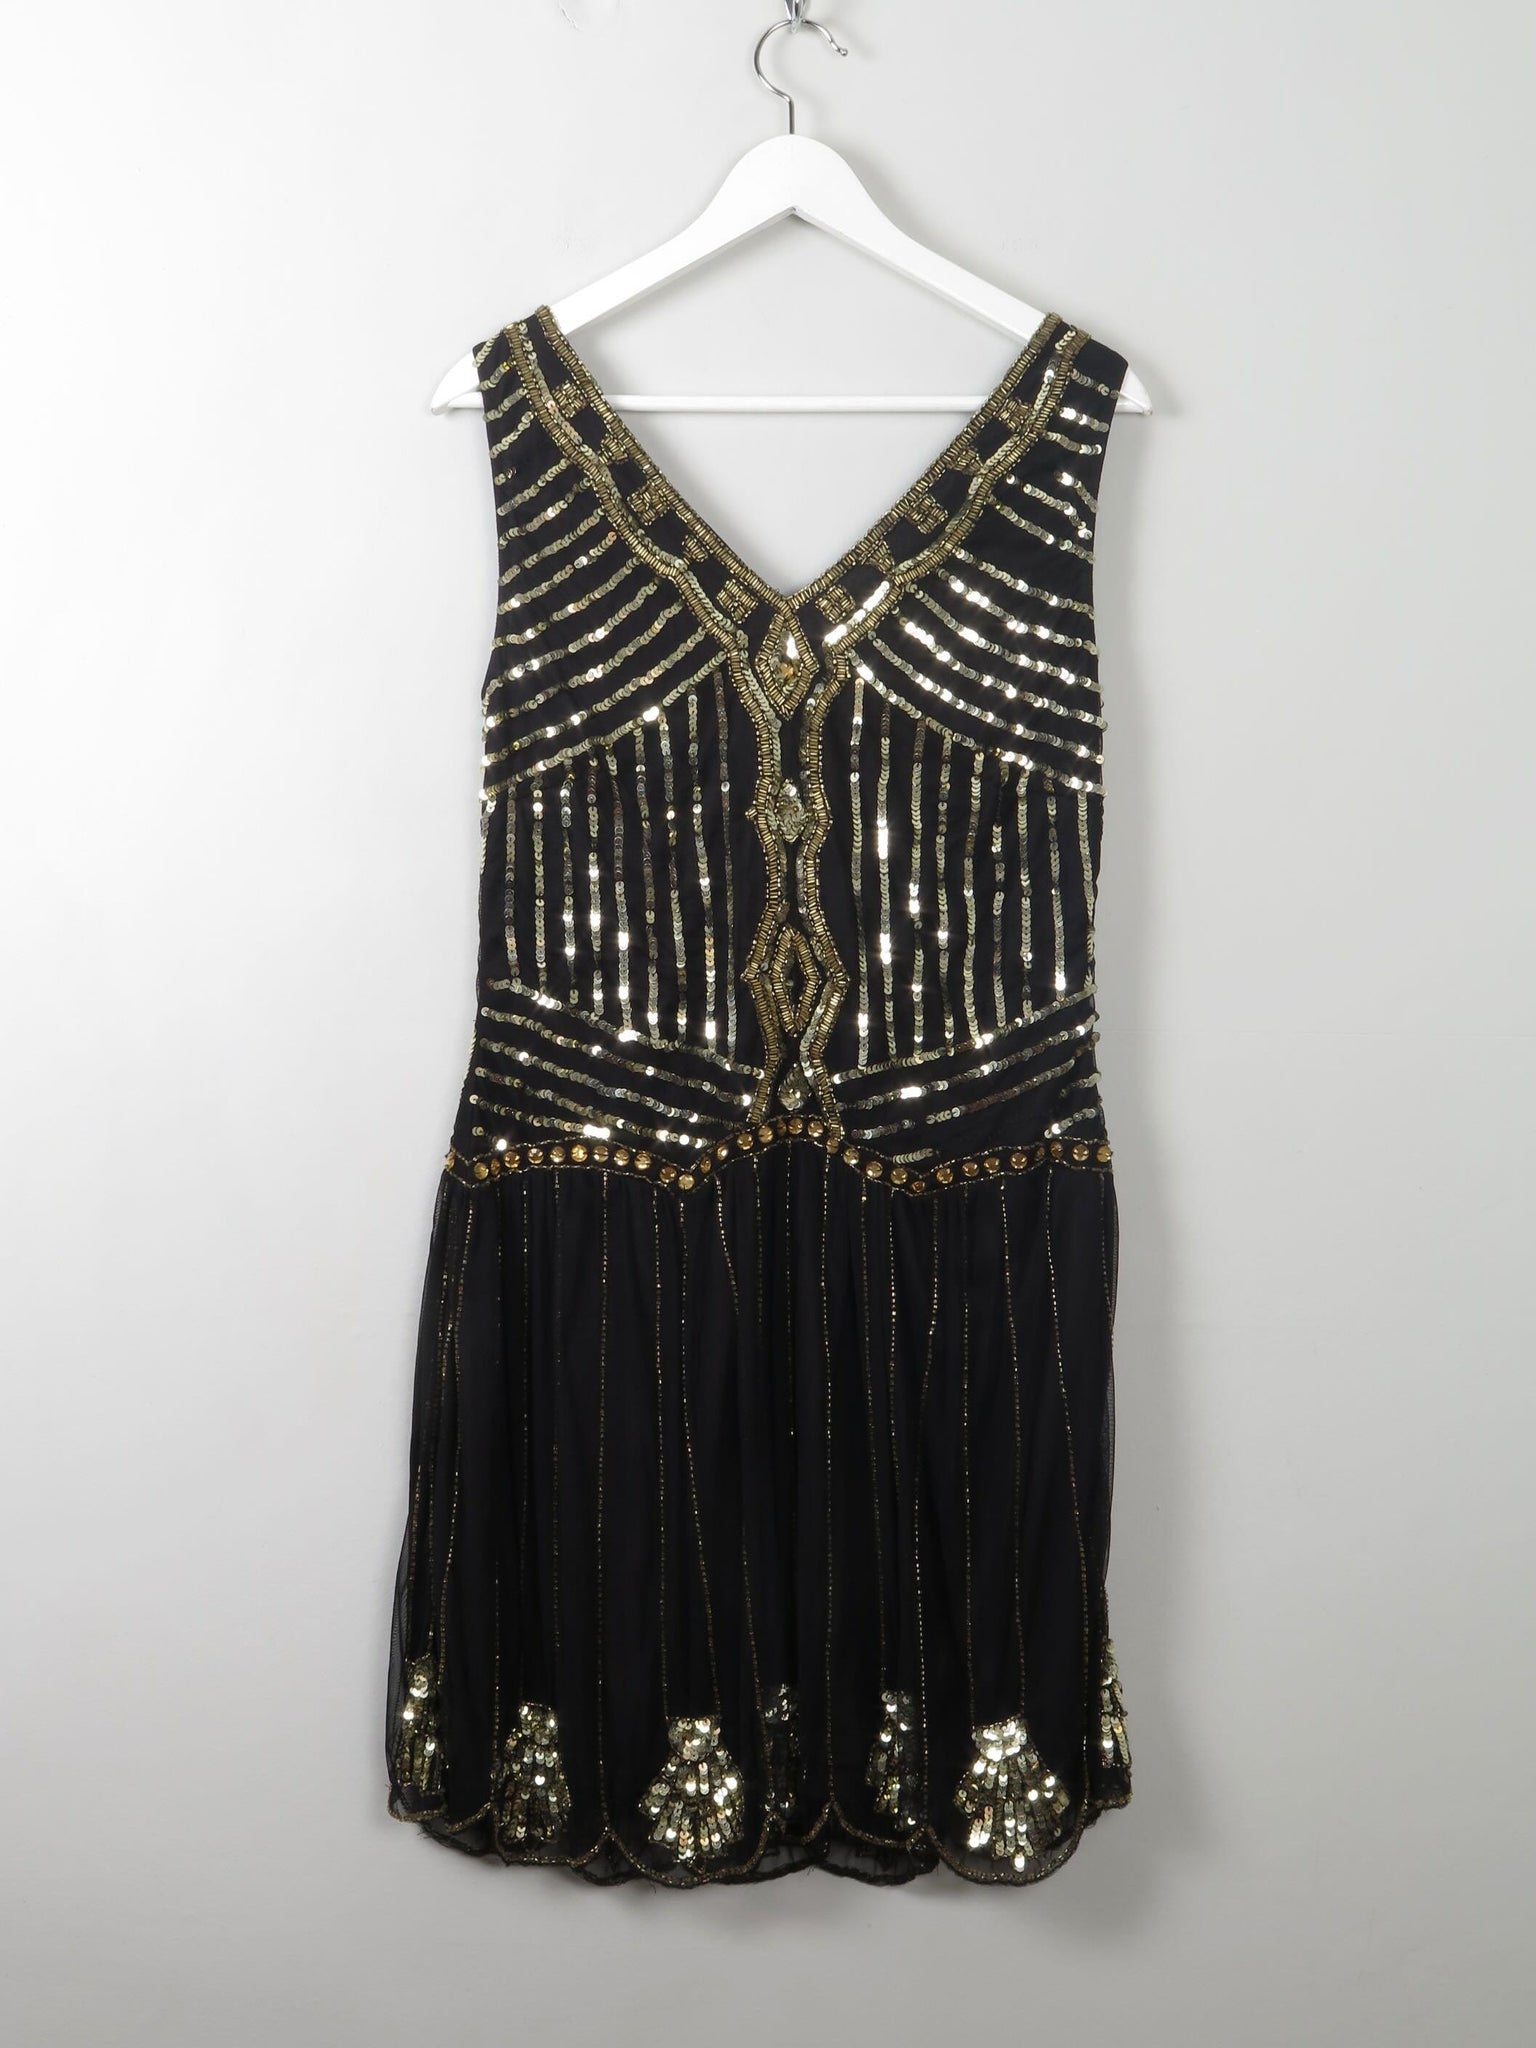 Black & Gold Vintage Style Flapper Dress 12 - The Harlequin